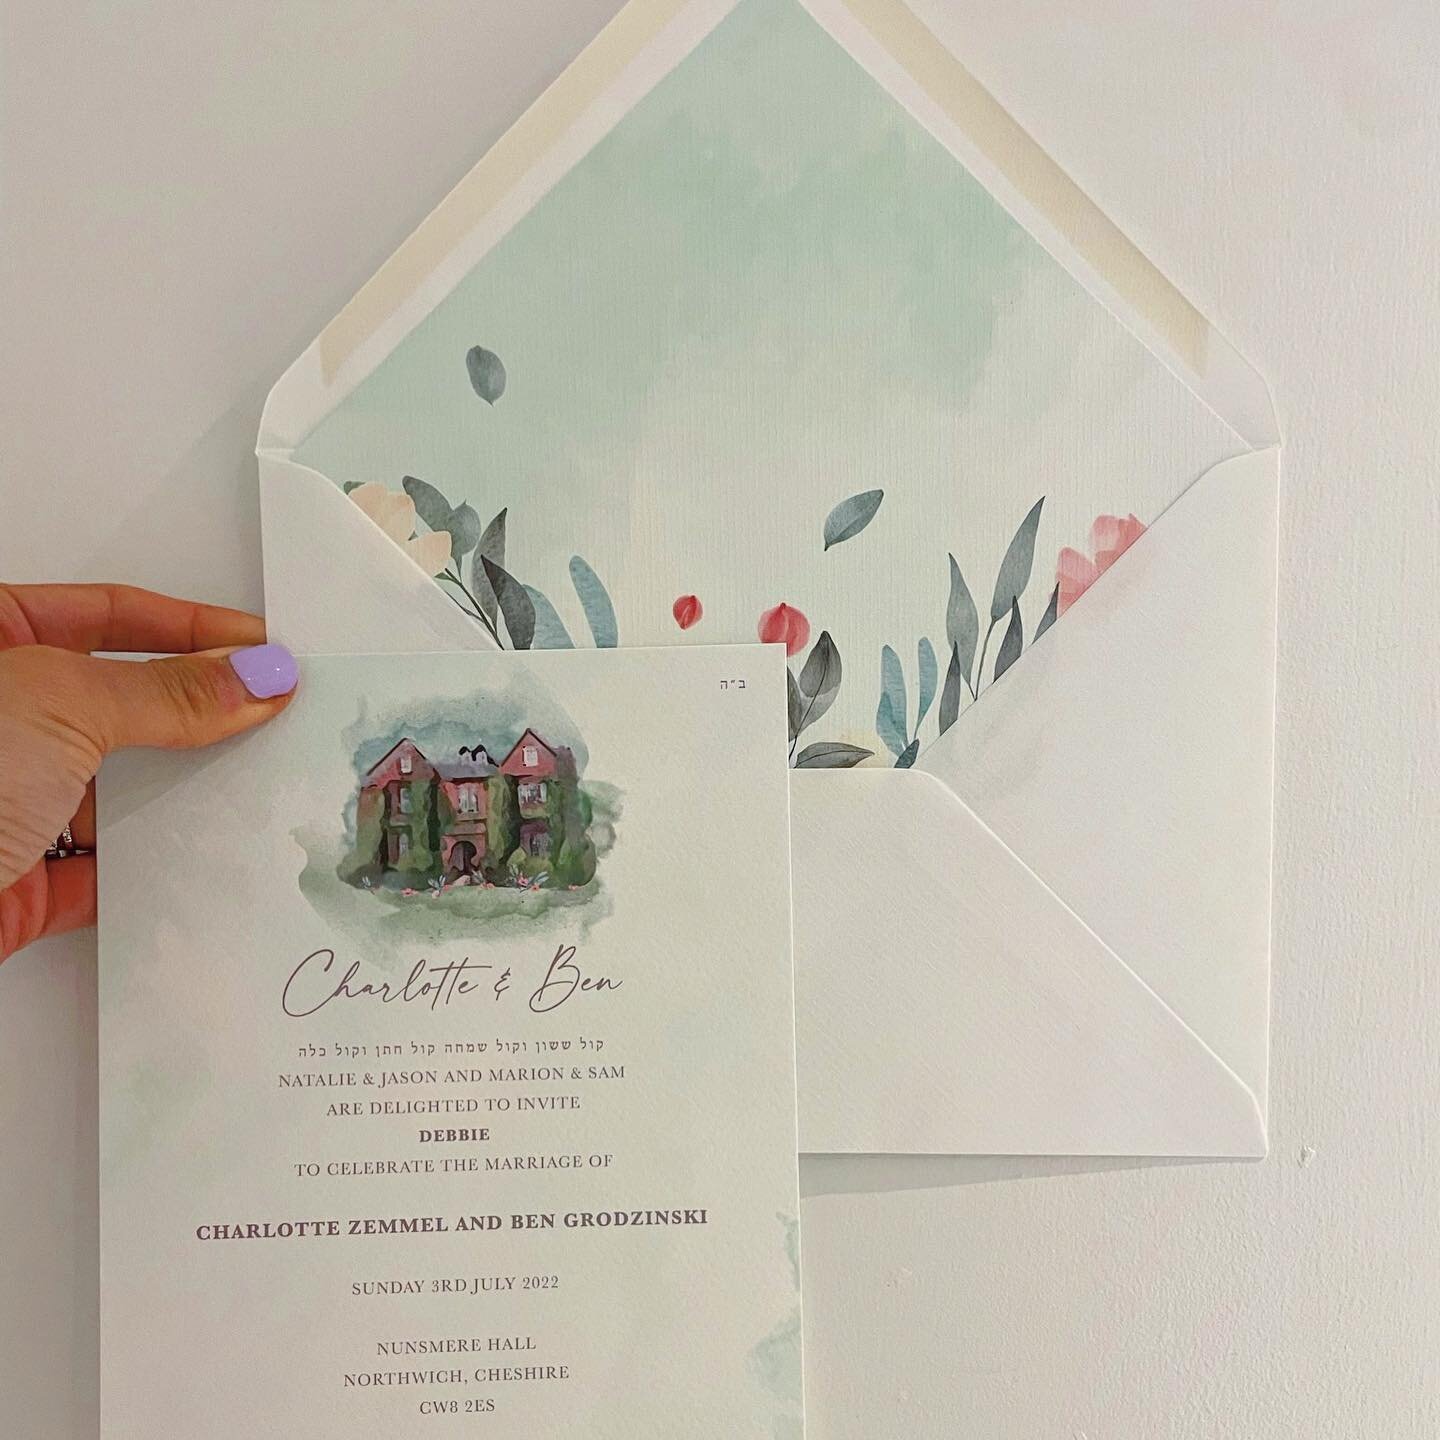 Envelope liners that give that extra finesse to your suite 😍😍😍
.
.
.
#envelopeliner #bespokestationery #weddingstationery #watercolourdesign #nunsmerehall #proudlyprinted #jewishwedding #weddingillustration #livandluc